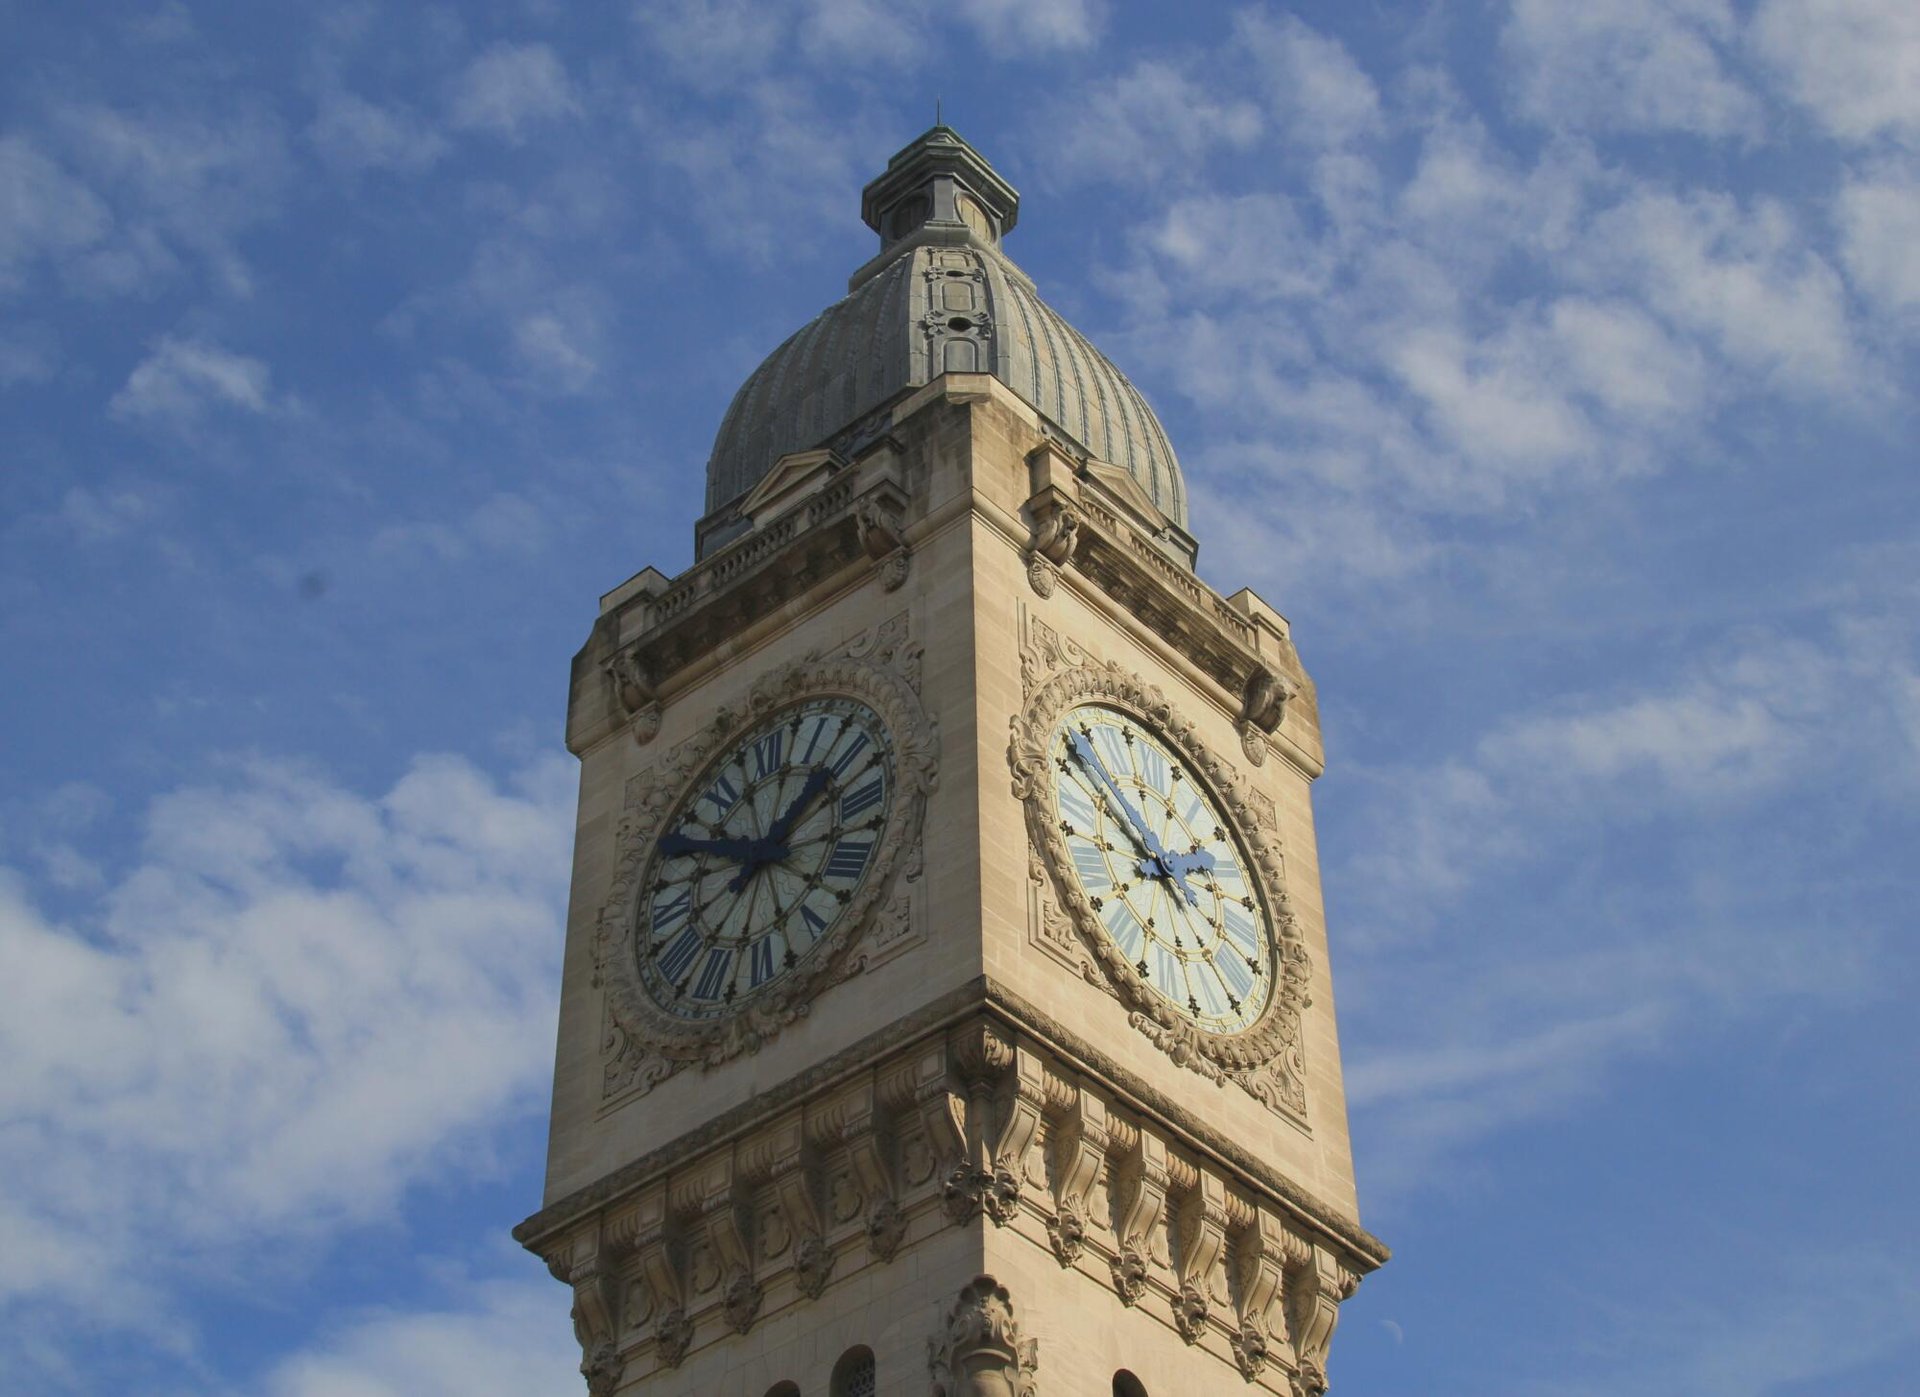 Gare de Lyon clock in Paris